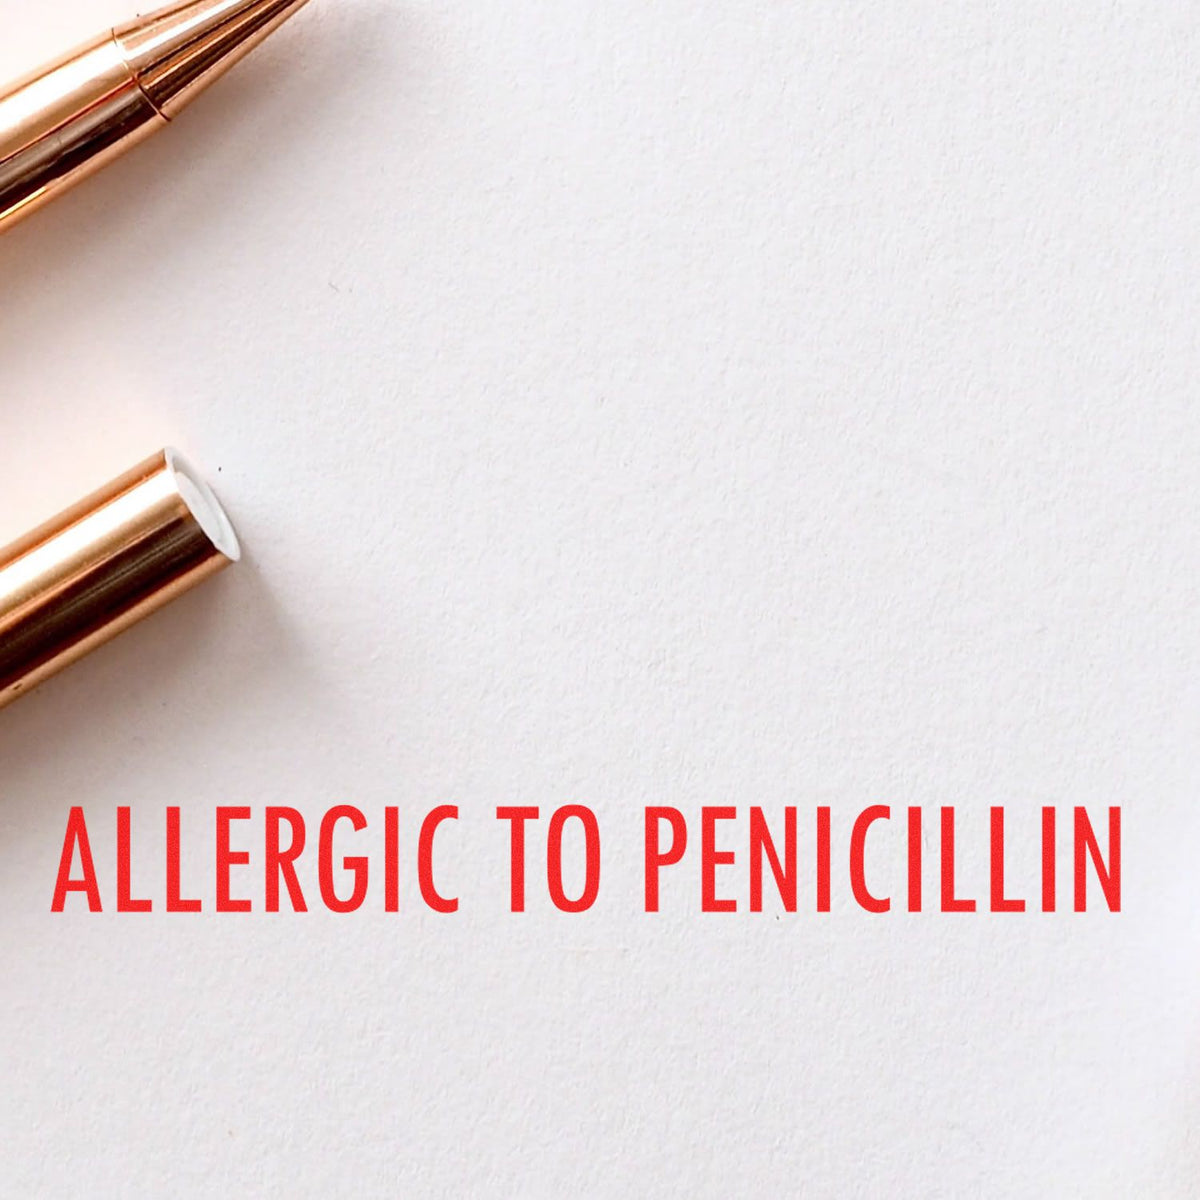 Slim Pre Inked Allergic To Penicillin Stamp In Use Photo